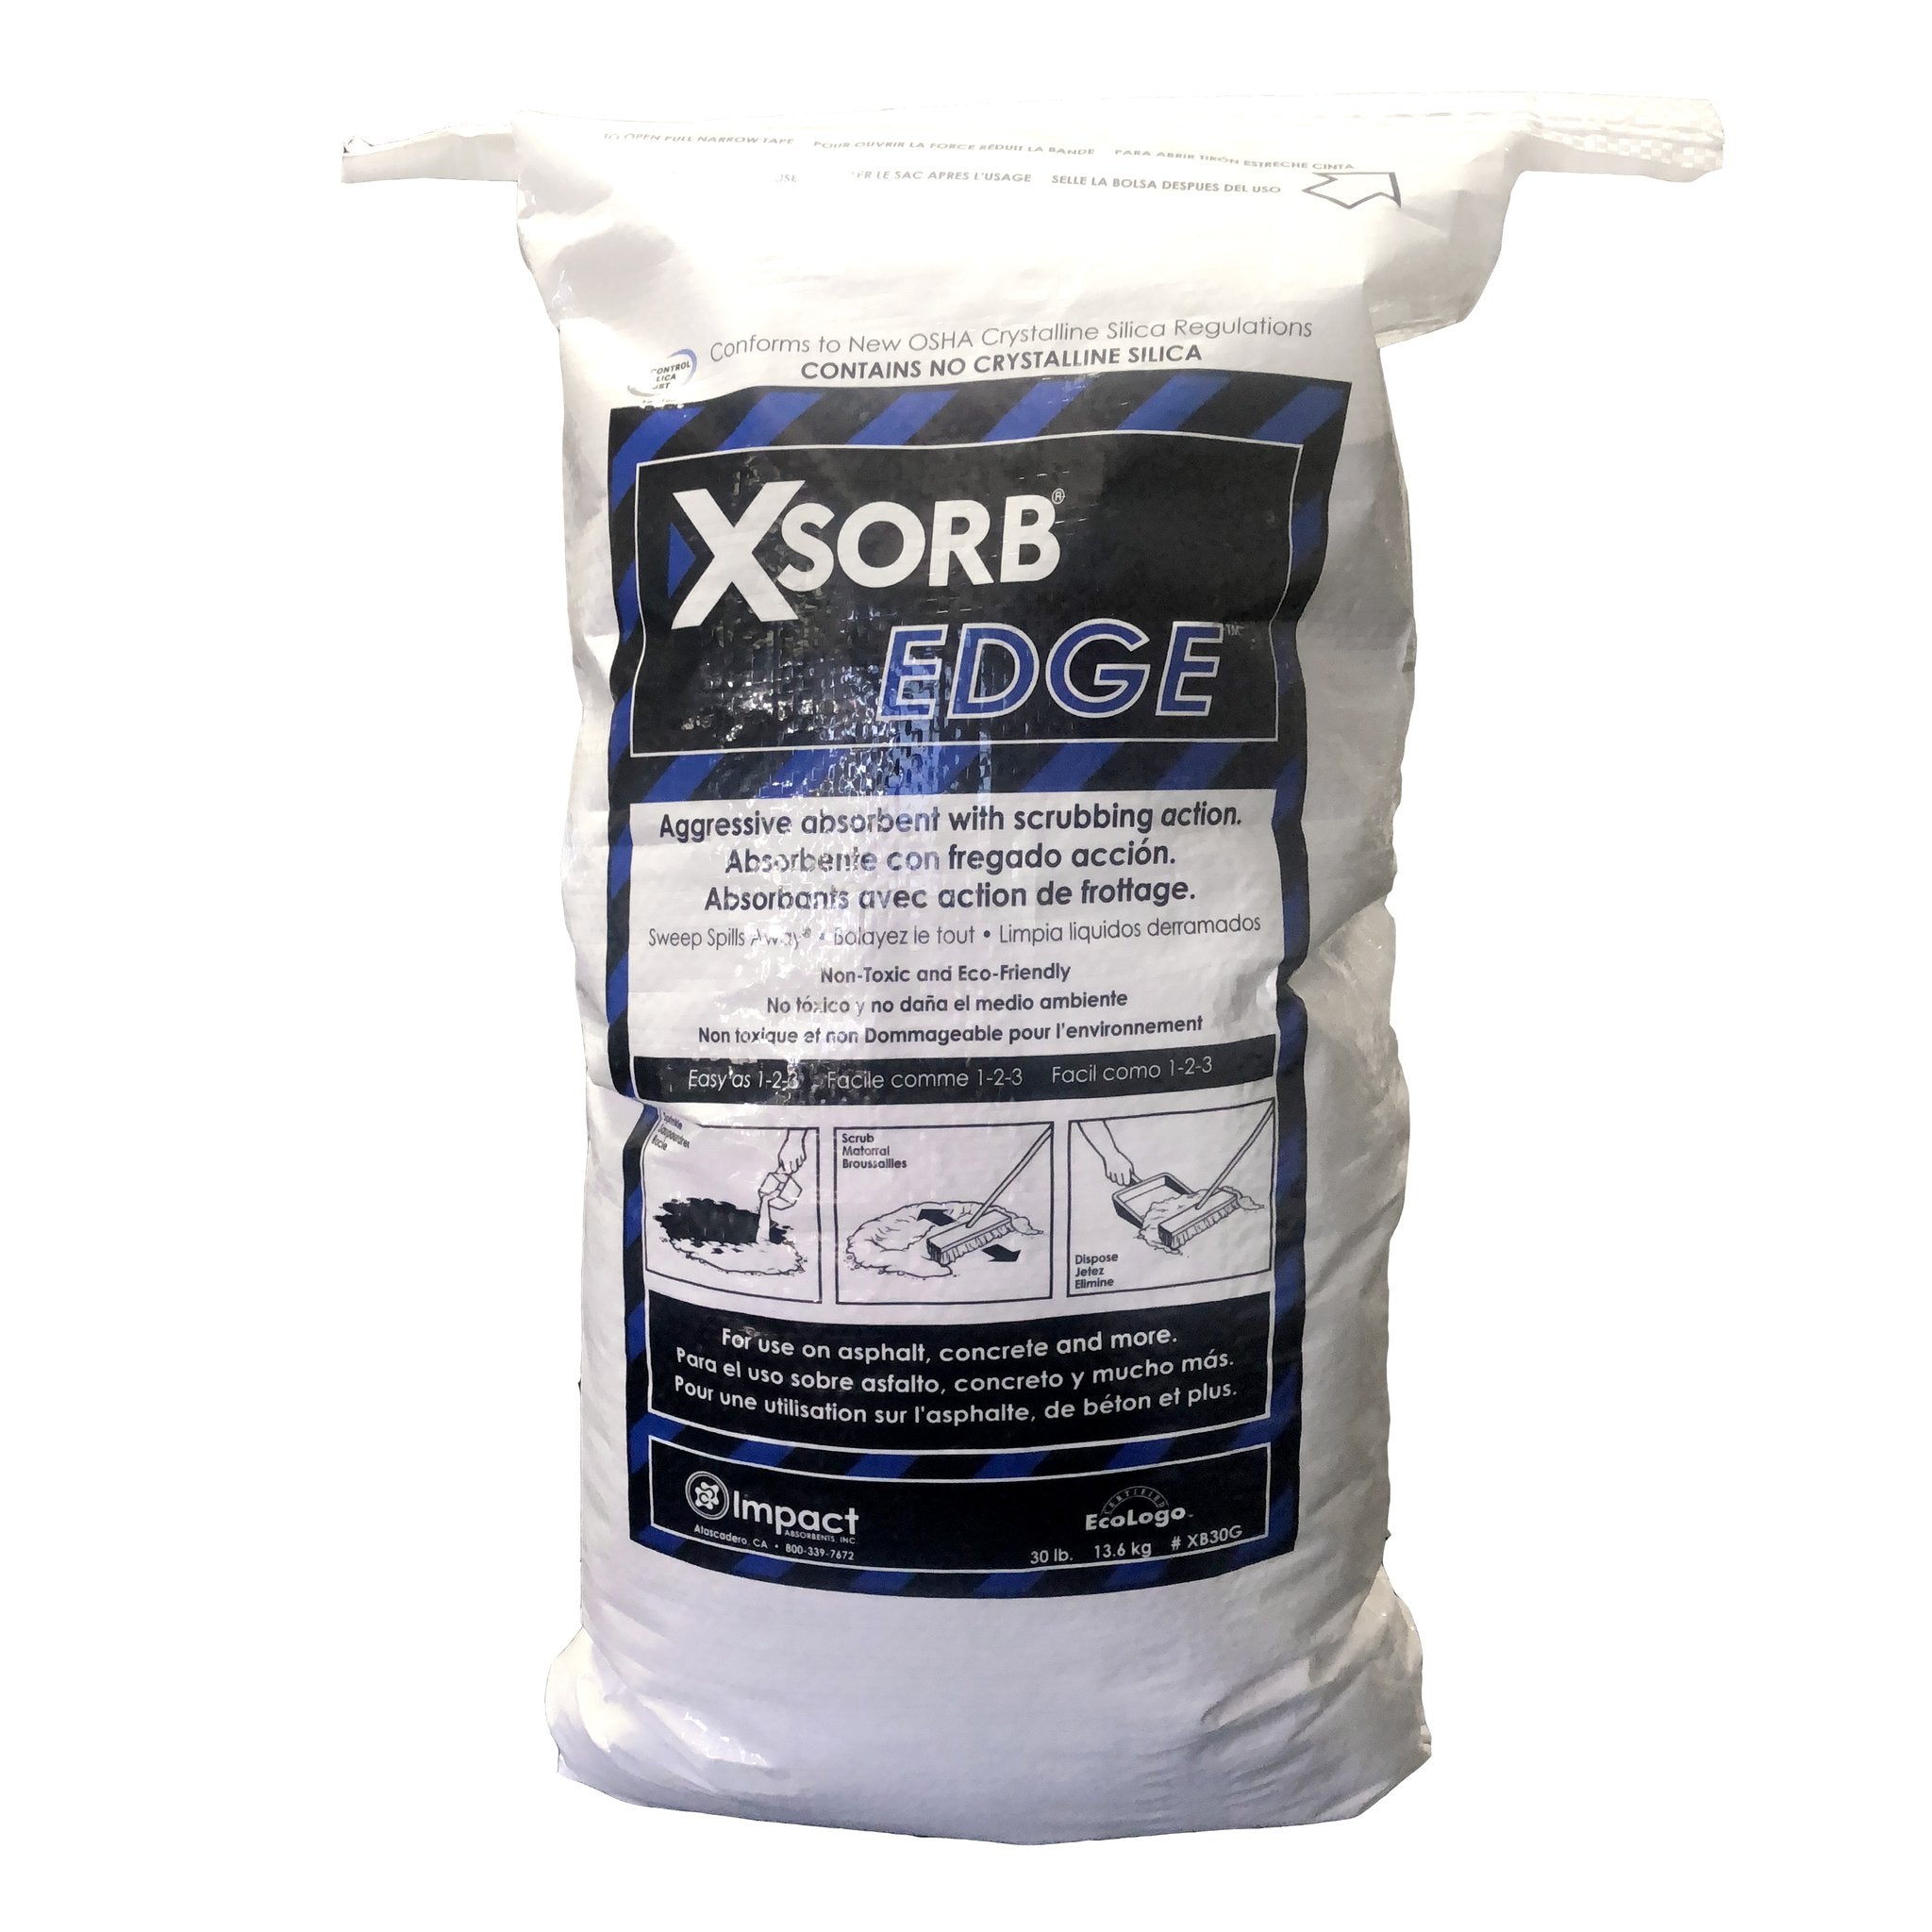 XSORB EDGE Aggressive Absorbent Bag 30 lb. - 1 BAG